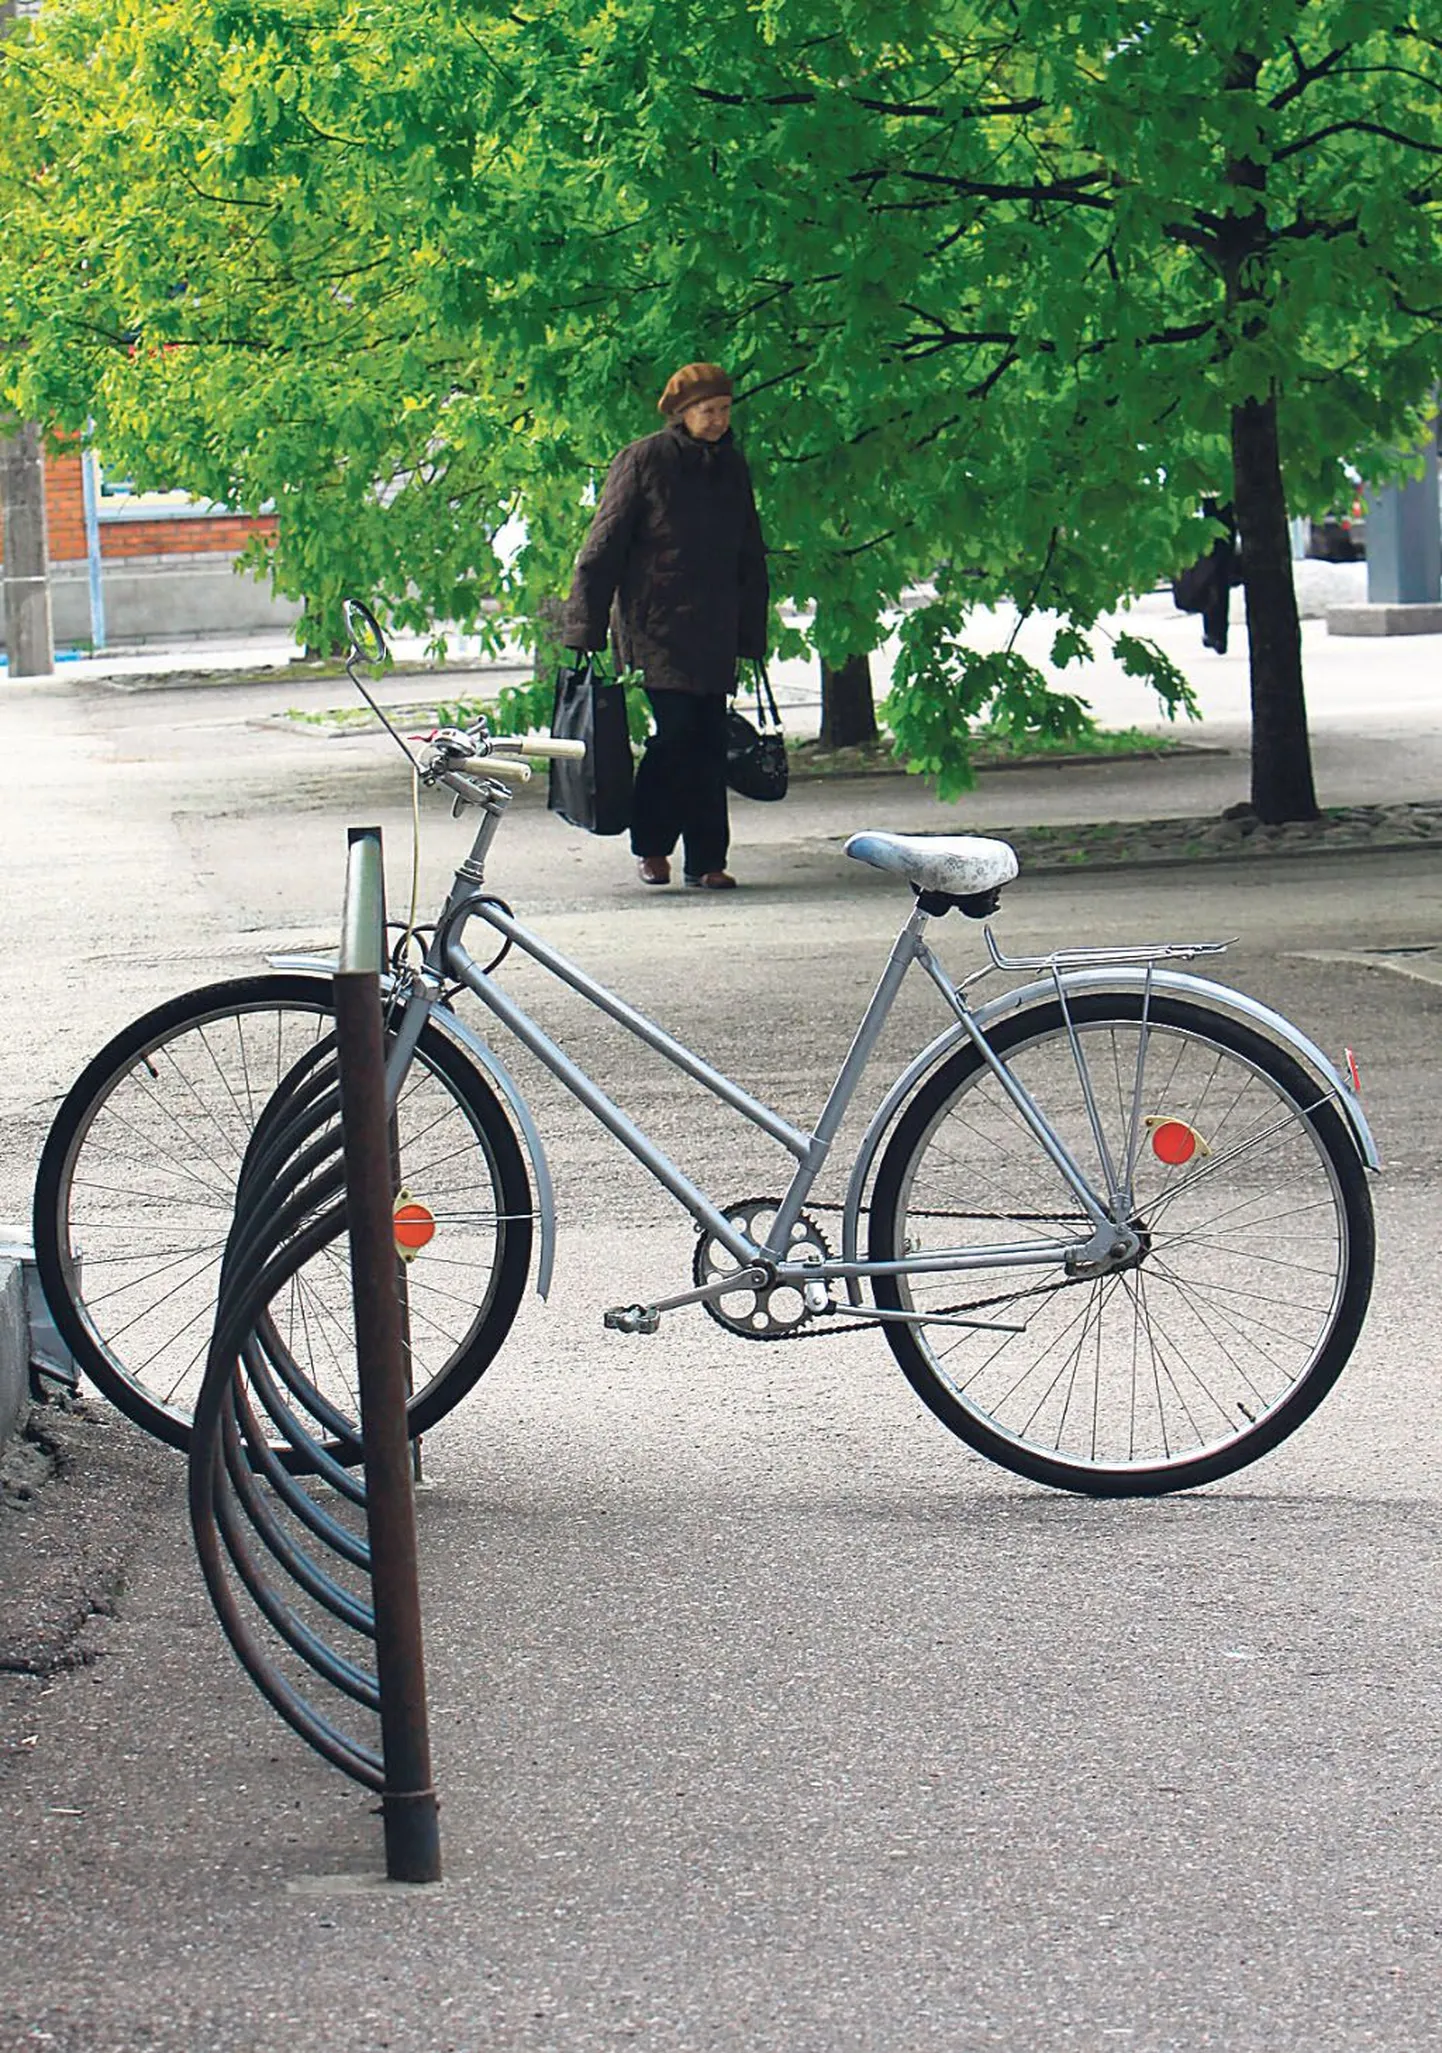 Kodanikuühiskonna nädala puhul Pärnus toimunud inkubaatoris “KUUR 12” kutsuti ellu algatus rajada linna jalgrattahoidikud. Praegu on neid Pärnus vähevõitu ja see piirab linnas jalgratta kasutamist, leiavad algatuse autorid.